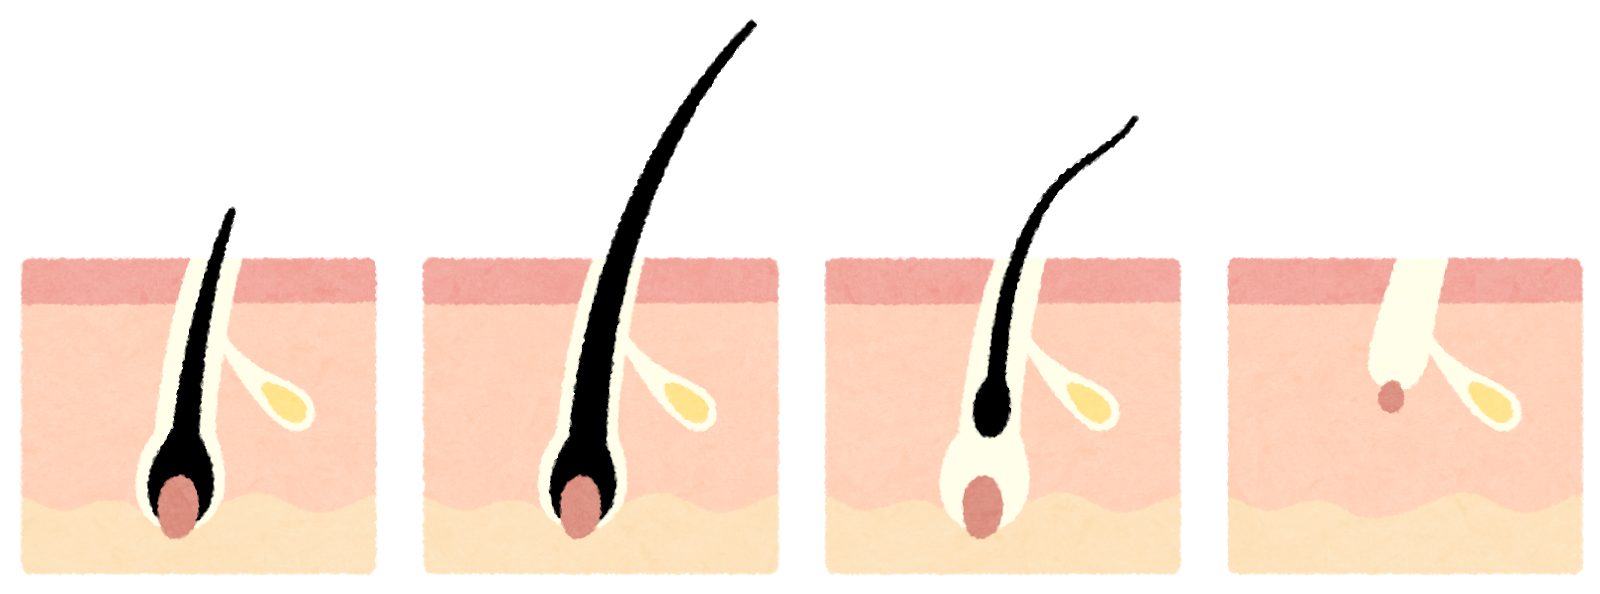 脱毛の期間や回数に深く関係している毛周期